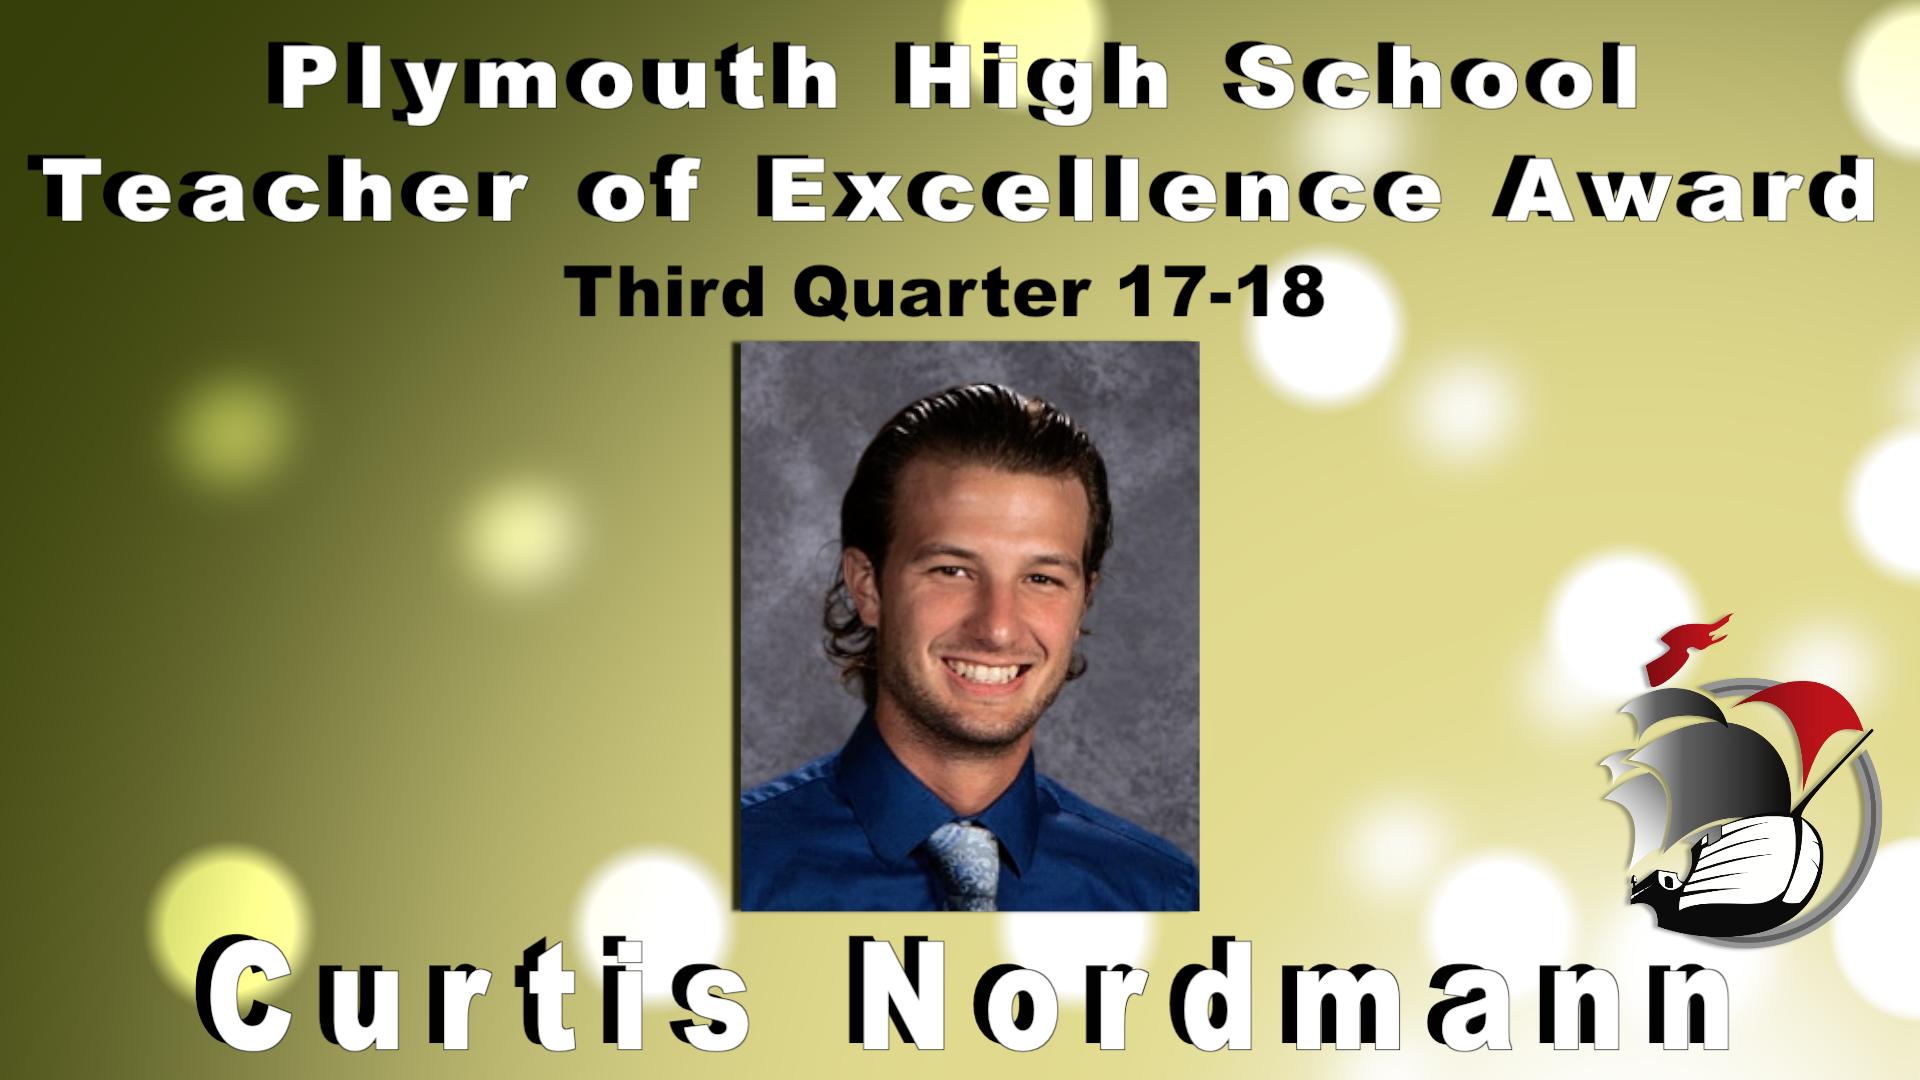 Plymouth High School Teacher of Excellence Award Third Quarter 17-18 Curtis Nordmann